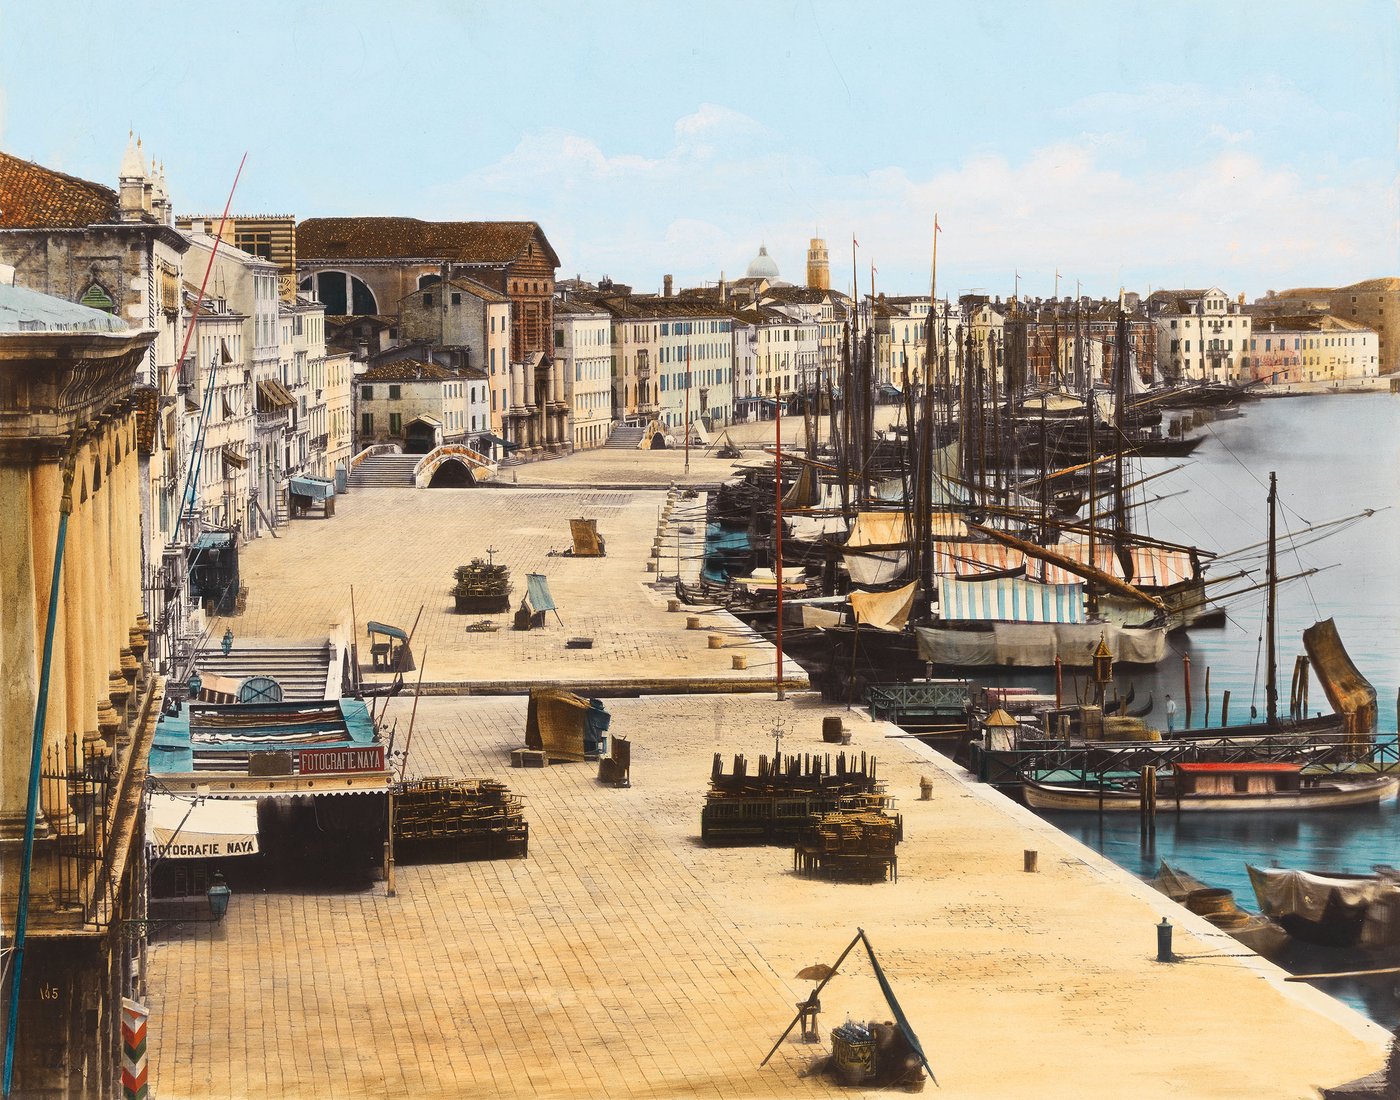 Koloriertes Foto der Uferpromenade Riva degli Schiavoni in Venedig, die von einer Häuserreihe links und der Lagune mit Segelschiffen rechts gesäumt wird. Links im Vordergrund ist das Geschäft des Fotografen zu erkennen.